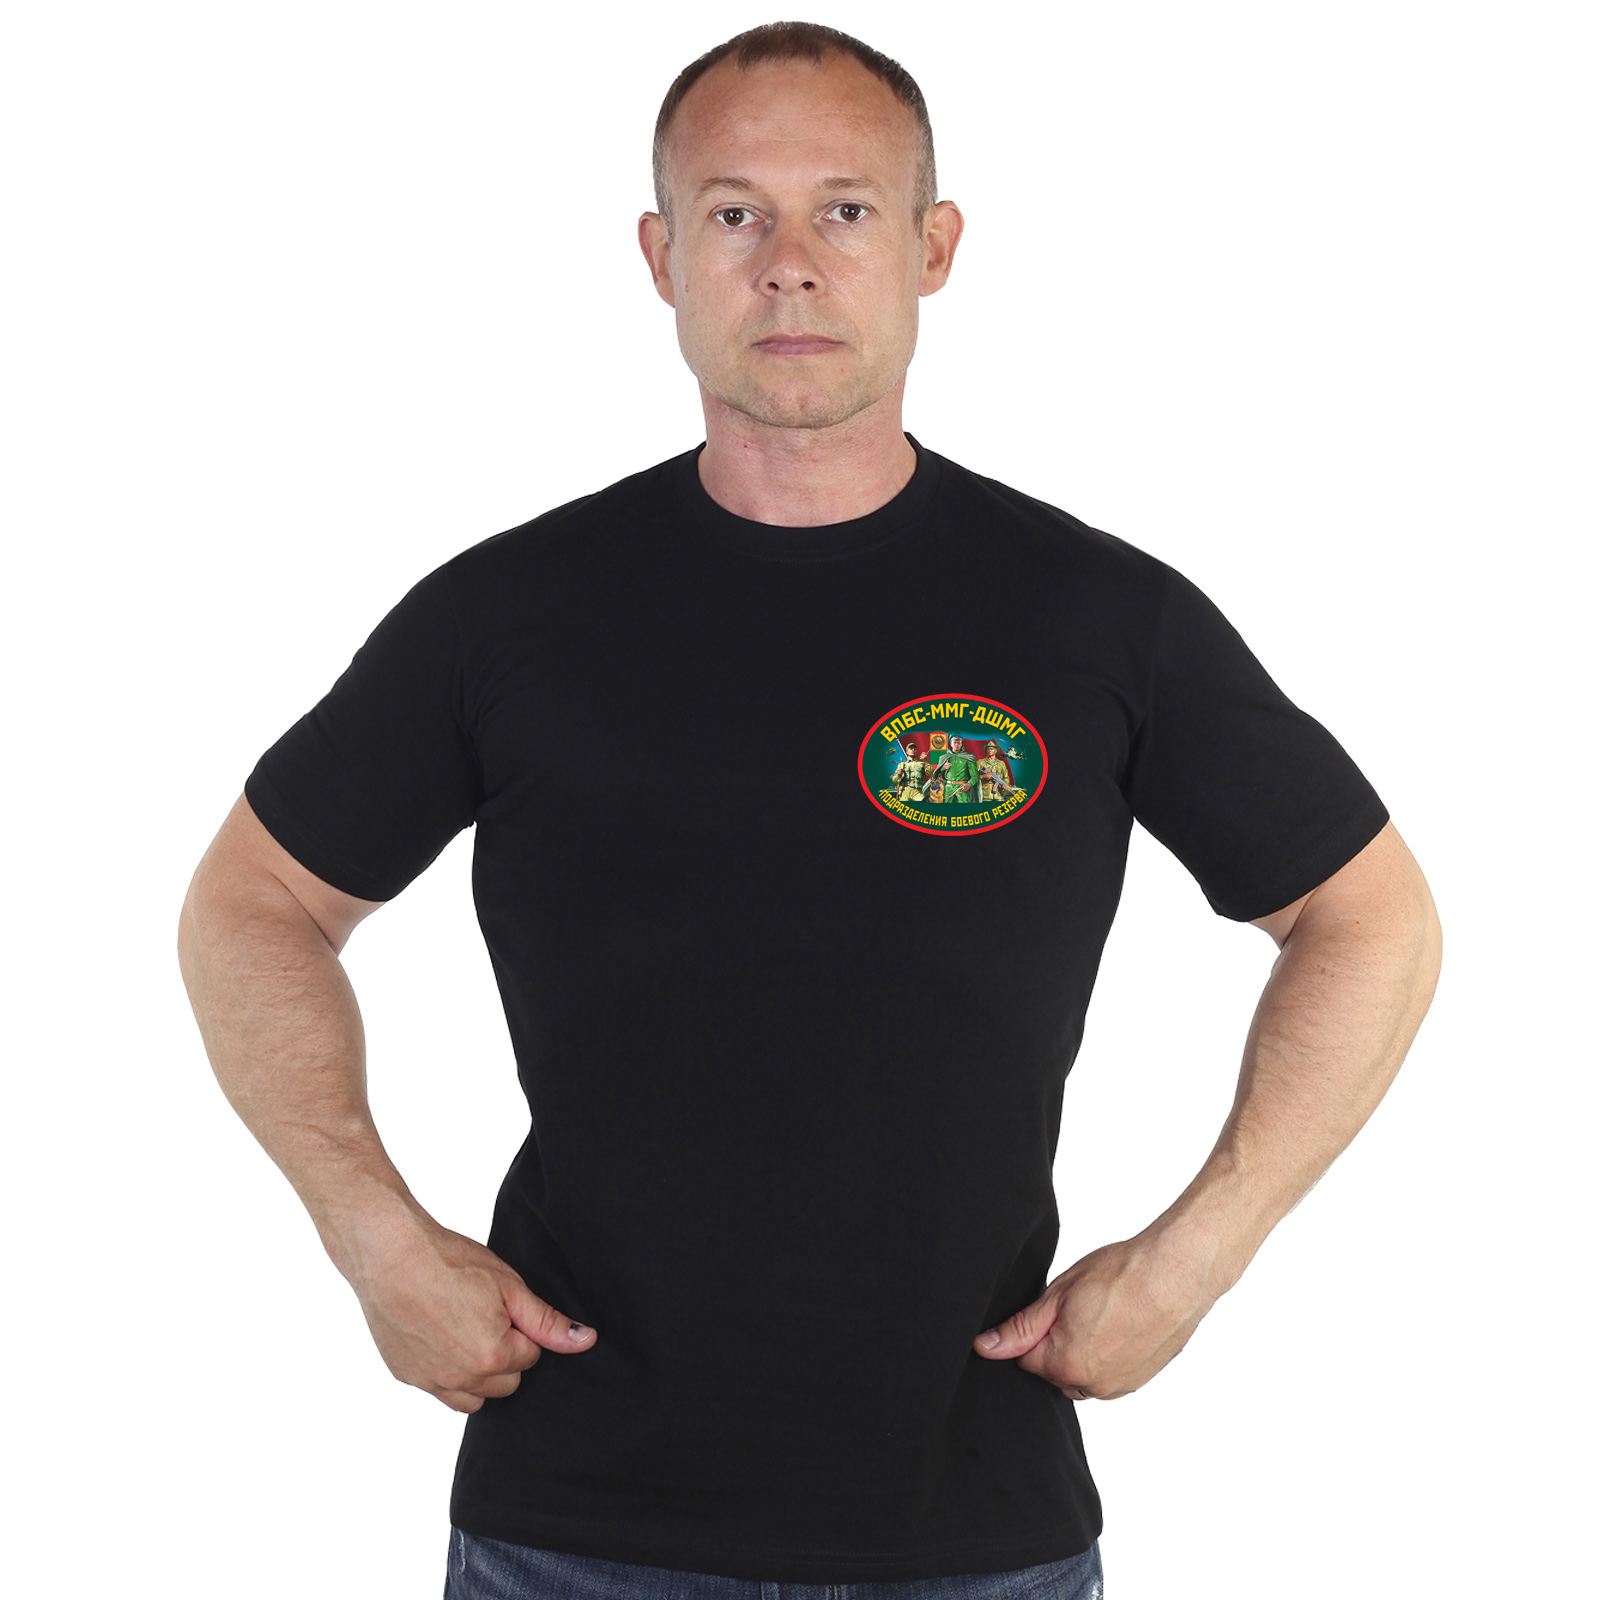 Купить в интернете футболку ВПБС-ММГ-ДШМГ Подразделения Боевого Резерва